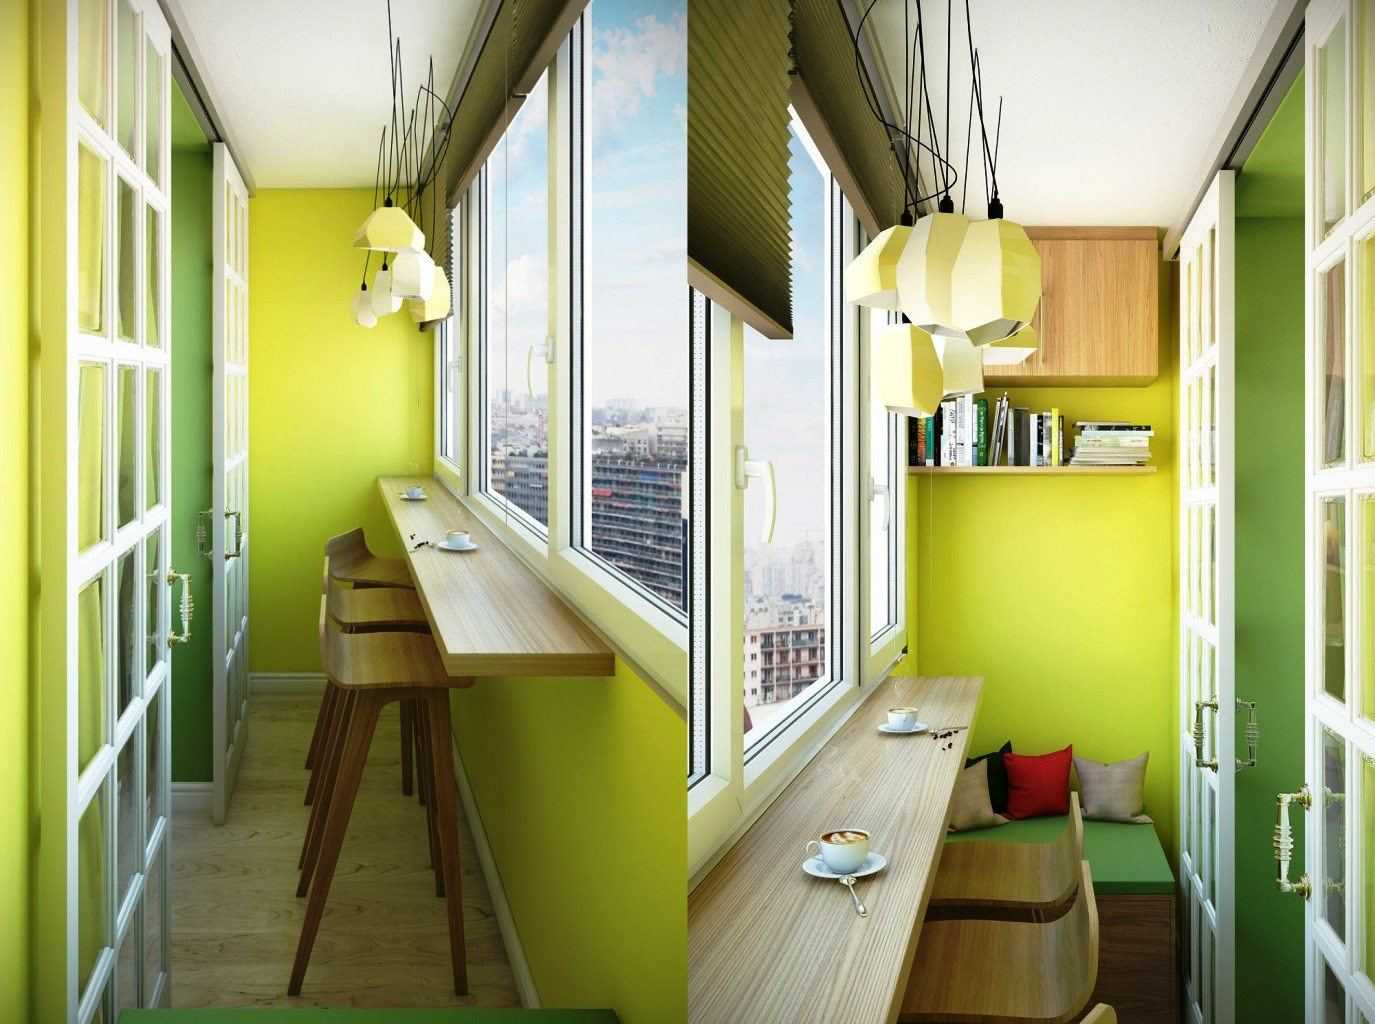 От наведения порядка до создания релакс-зоны на балконе — в нашей подборке 11 классный идей для тех, кто хочет добавить уюта в свою небольшую квартиру